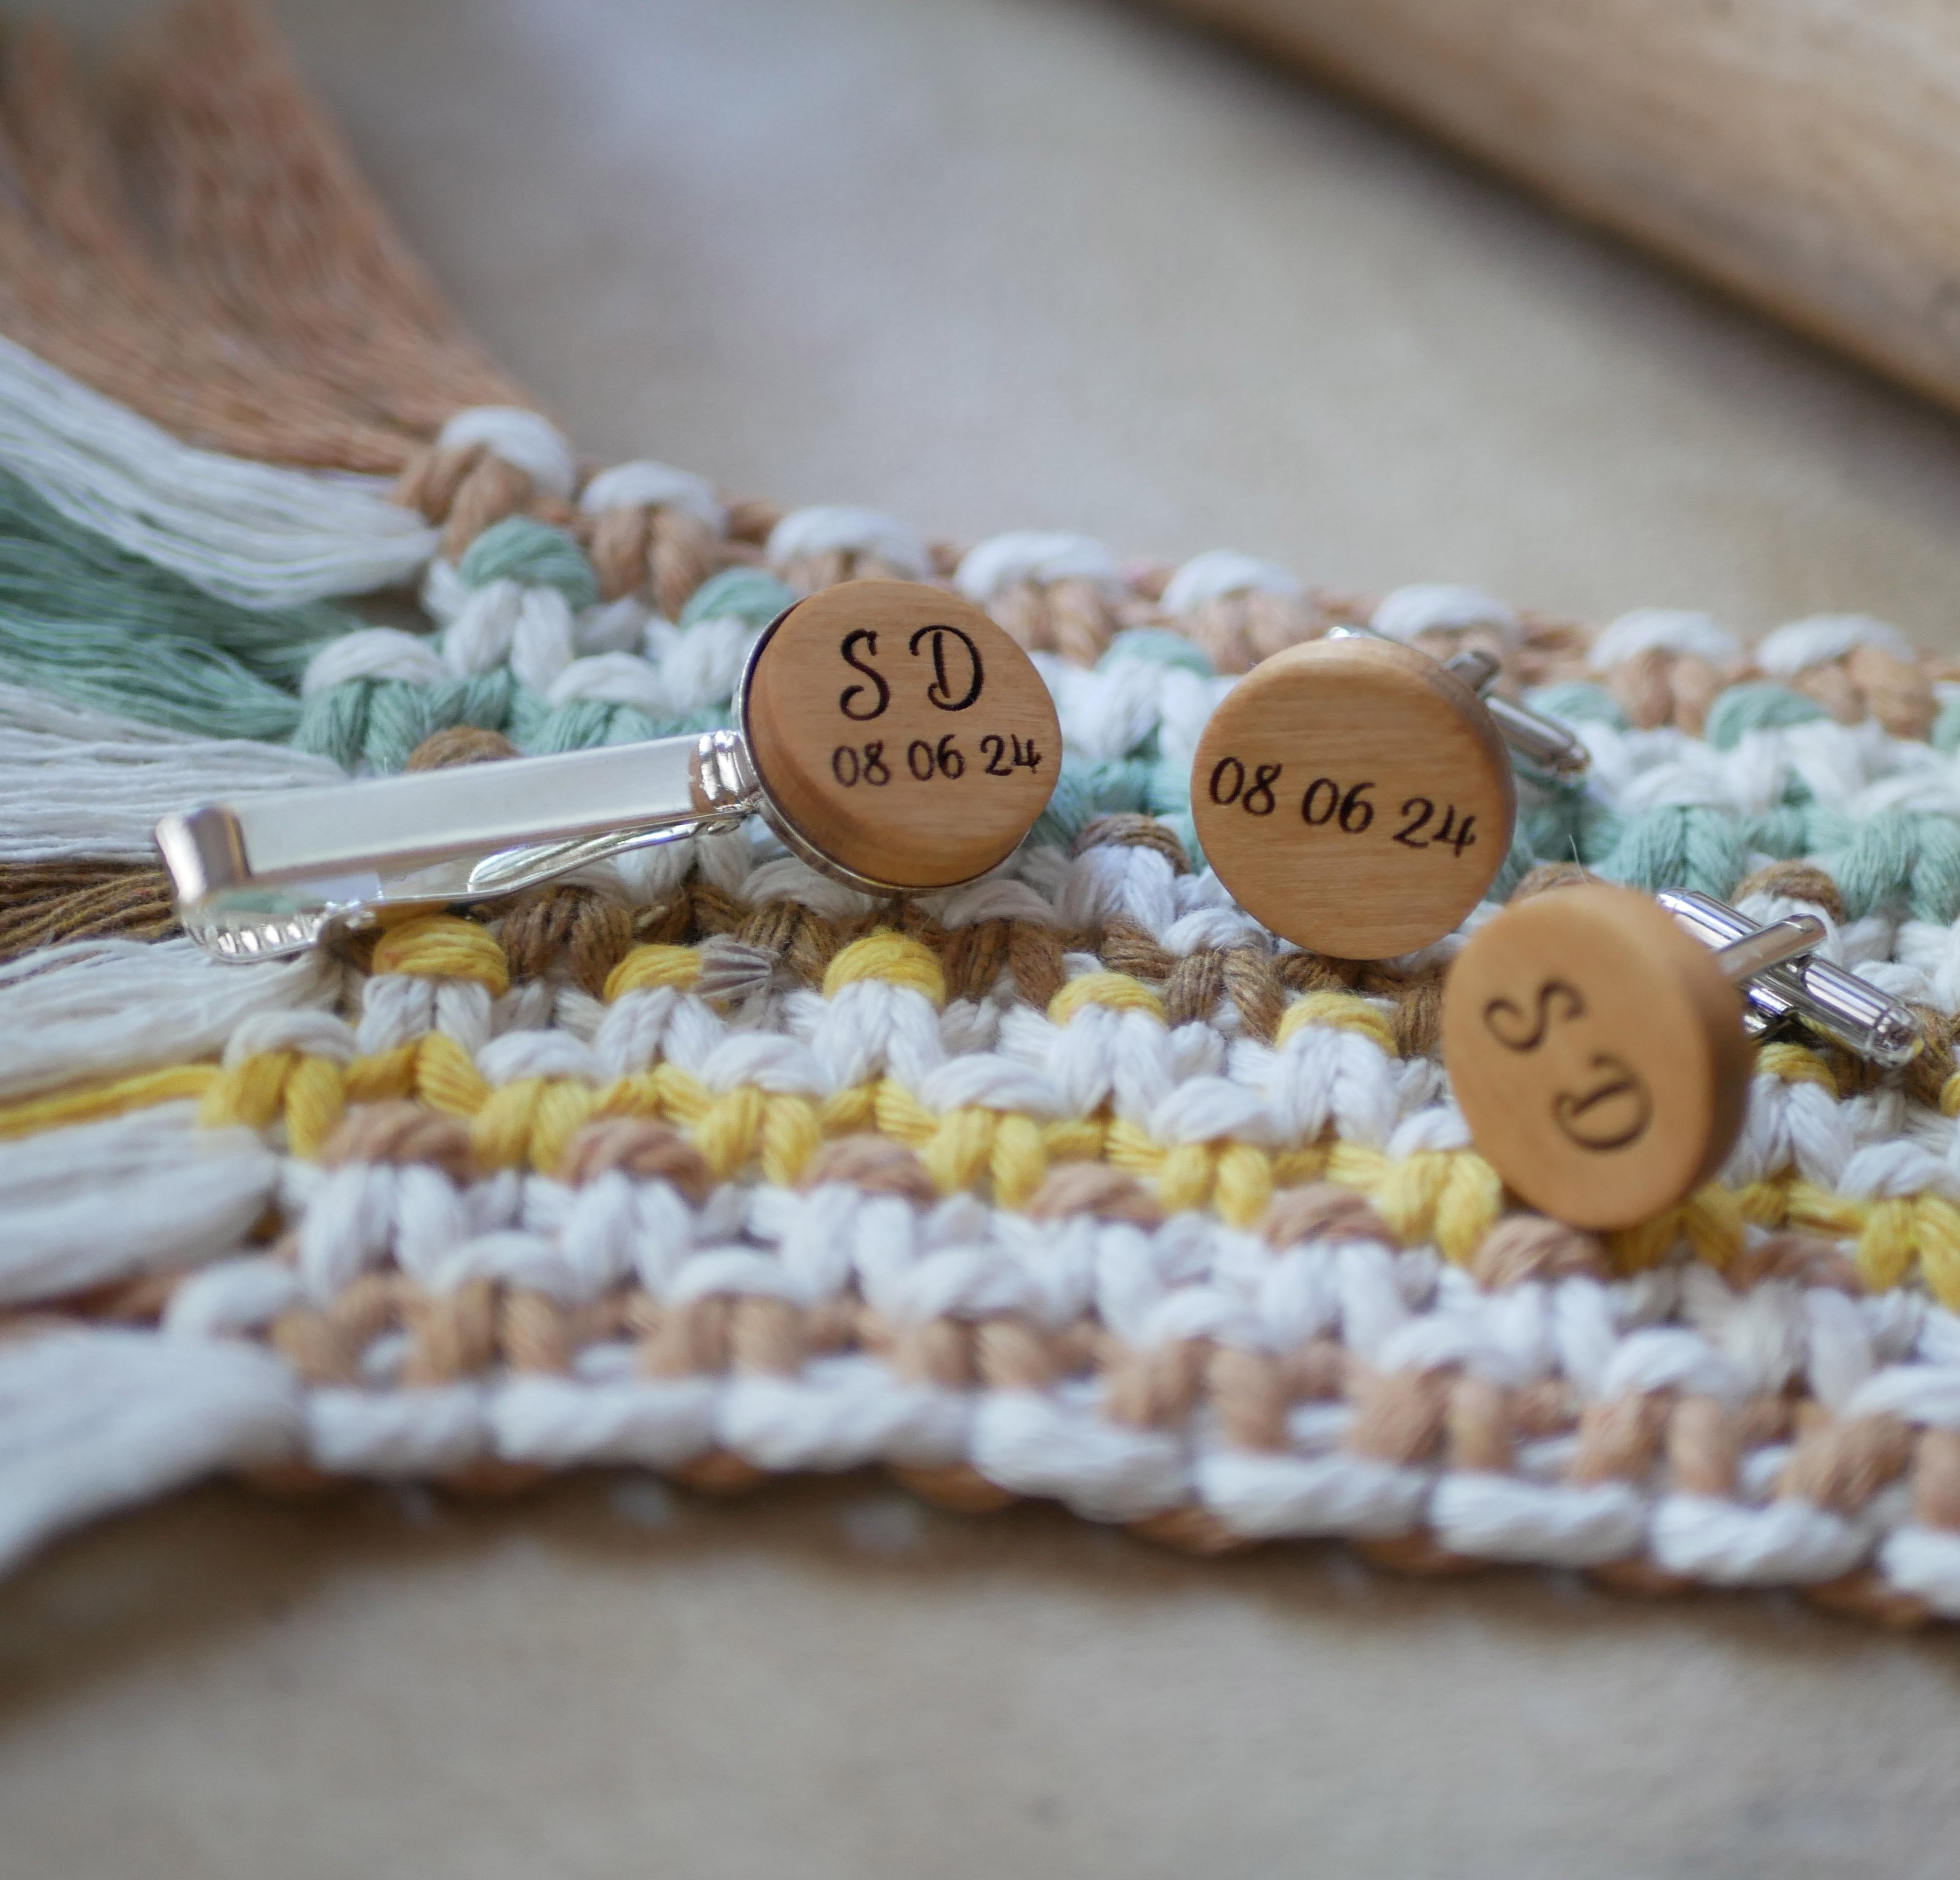 Krawattenklammer mit Holzcabochon personalisiert durch Gravur